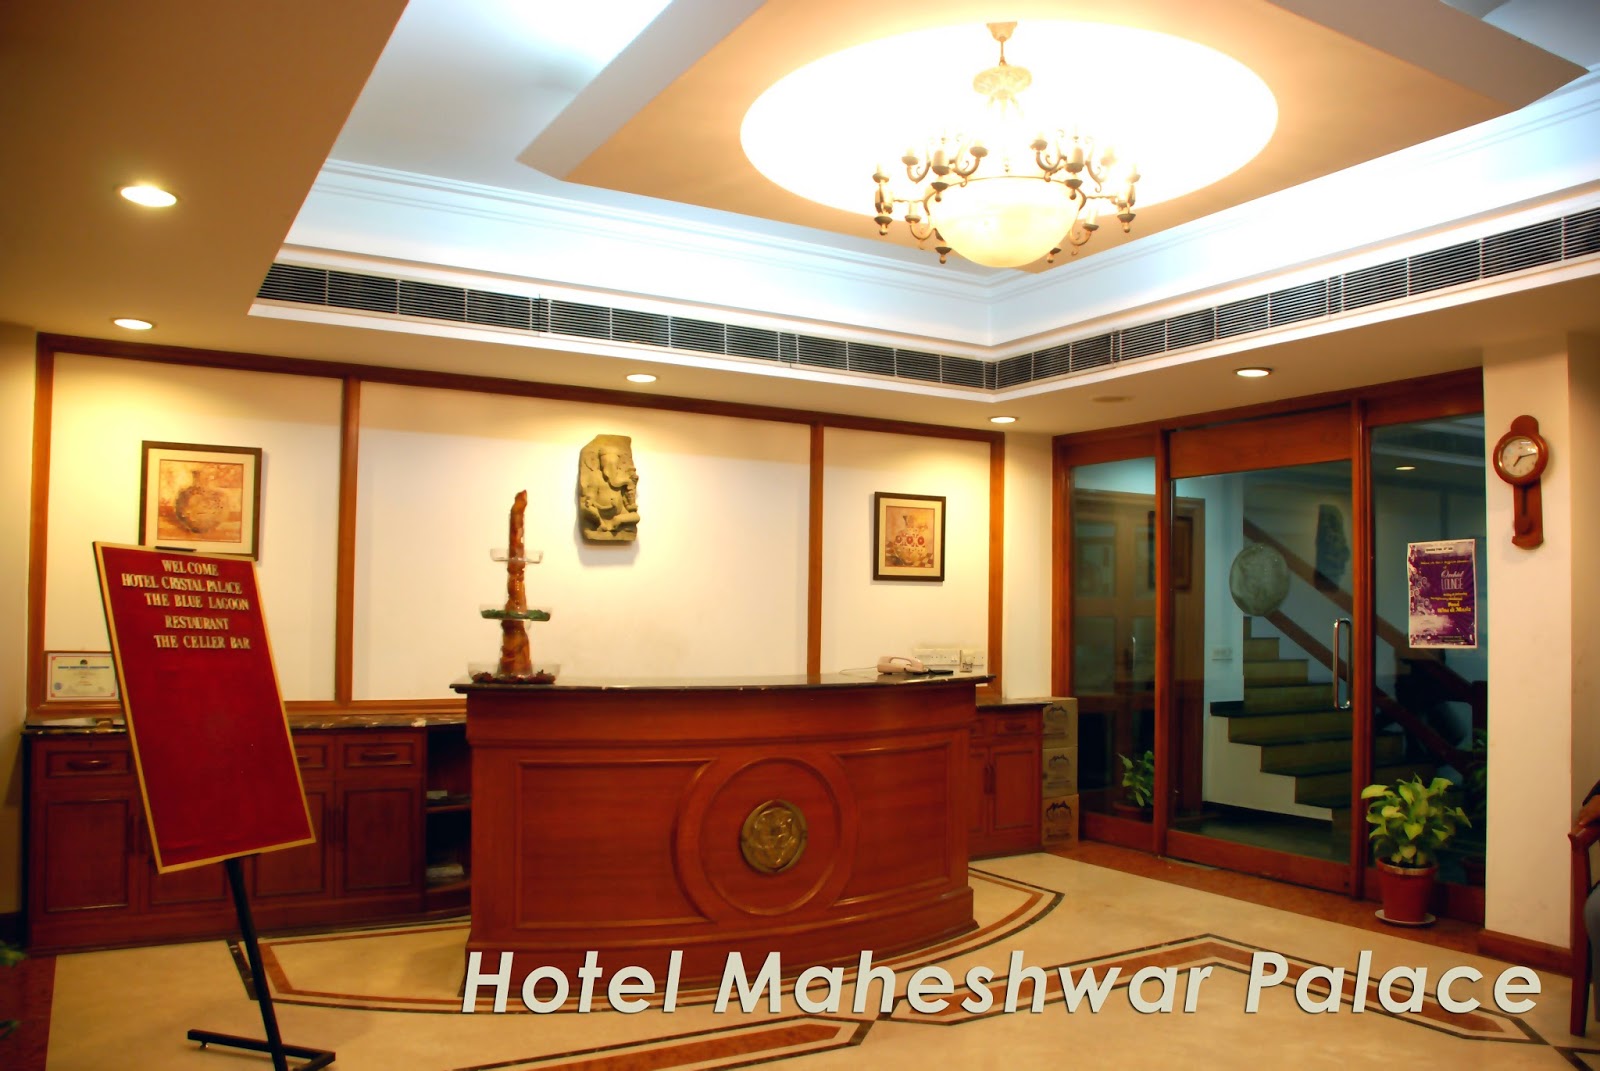 Maheshwar Palace - Wallpaper - Hotel Crystal Palace Meerut - HD Wallpaper 